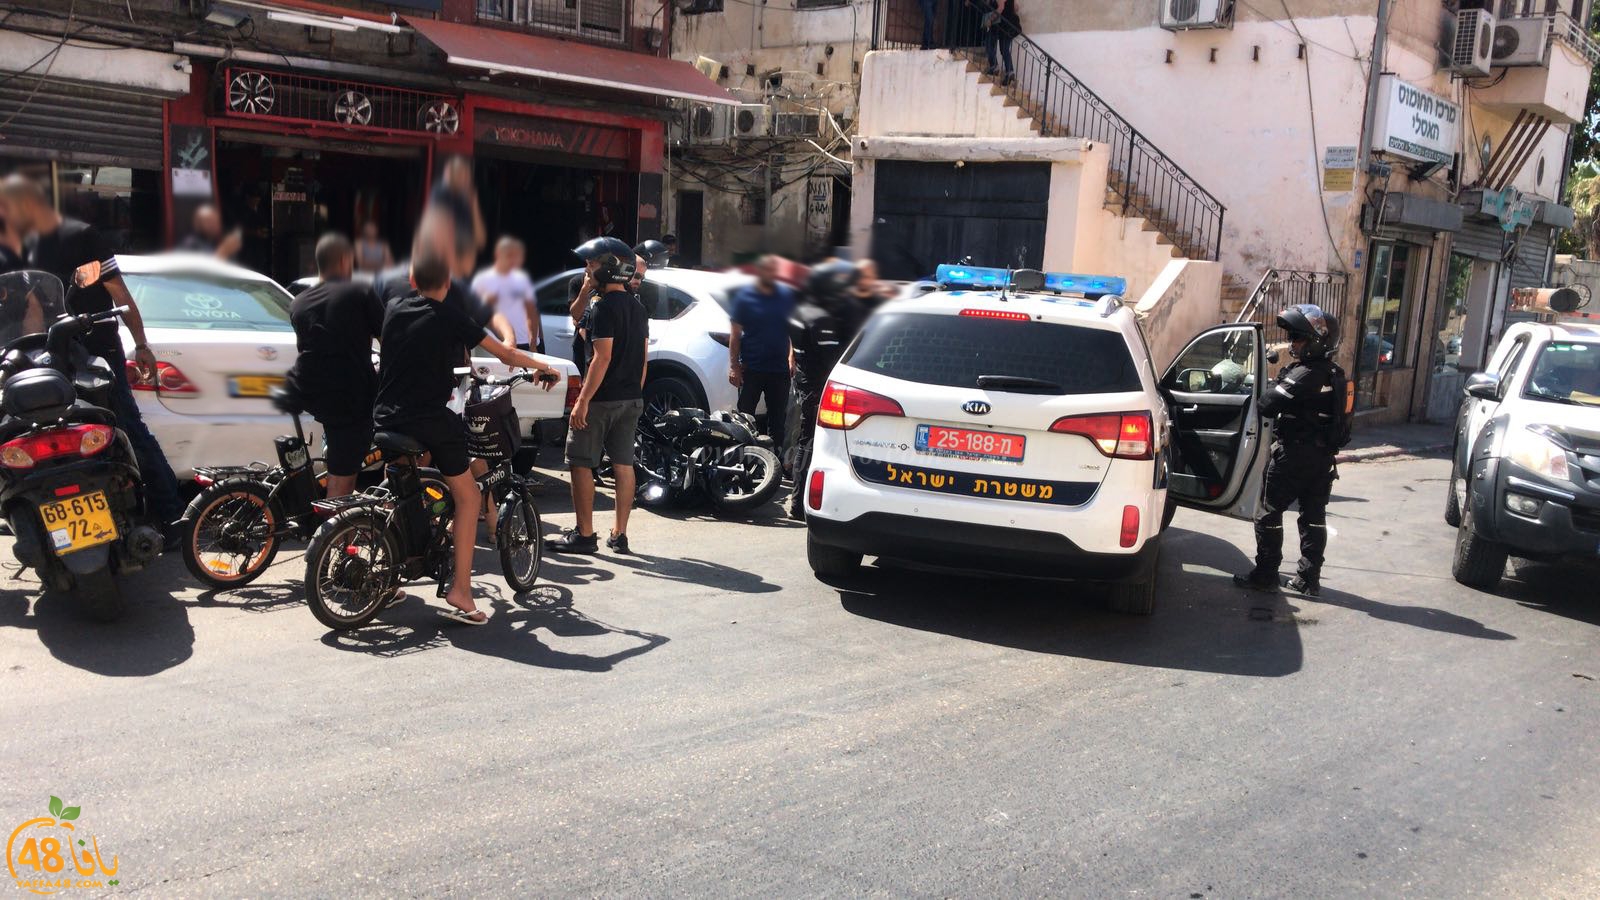  شهود عيان: الشرطة تعتدي على سائق دراجة نارية بعد مطاردته بيافا